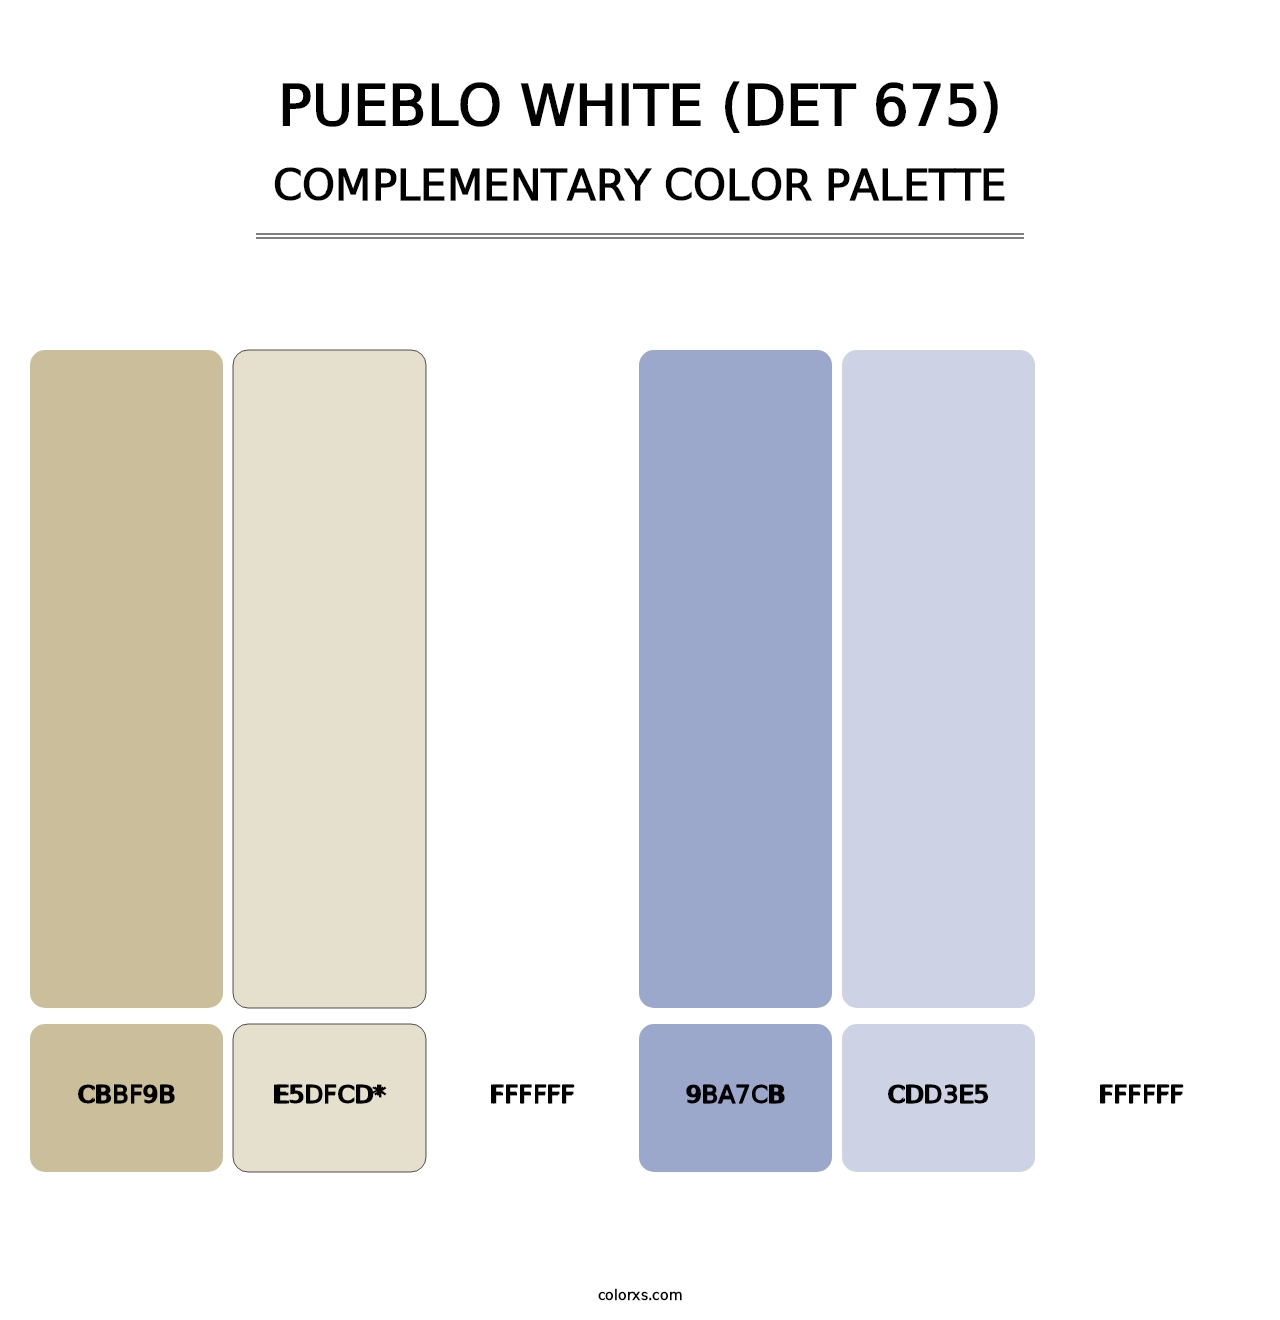 Pueblo White (DET 675) - Complementary Color Palette